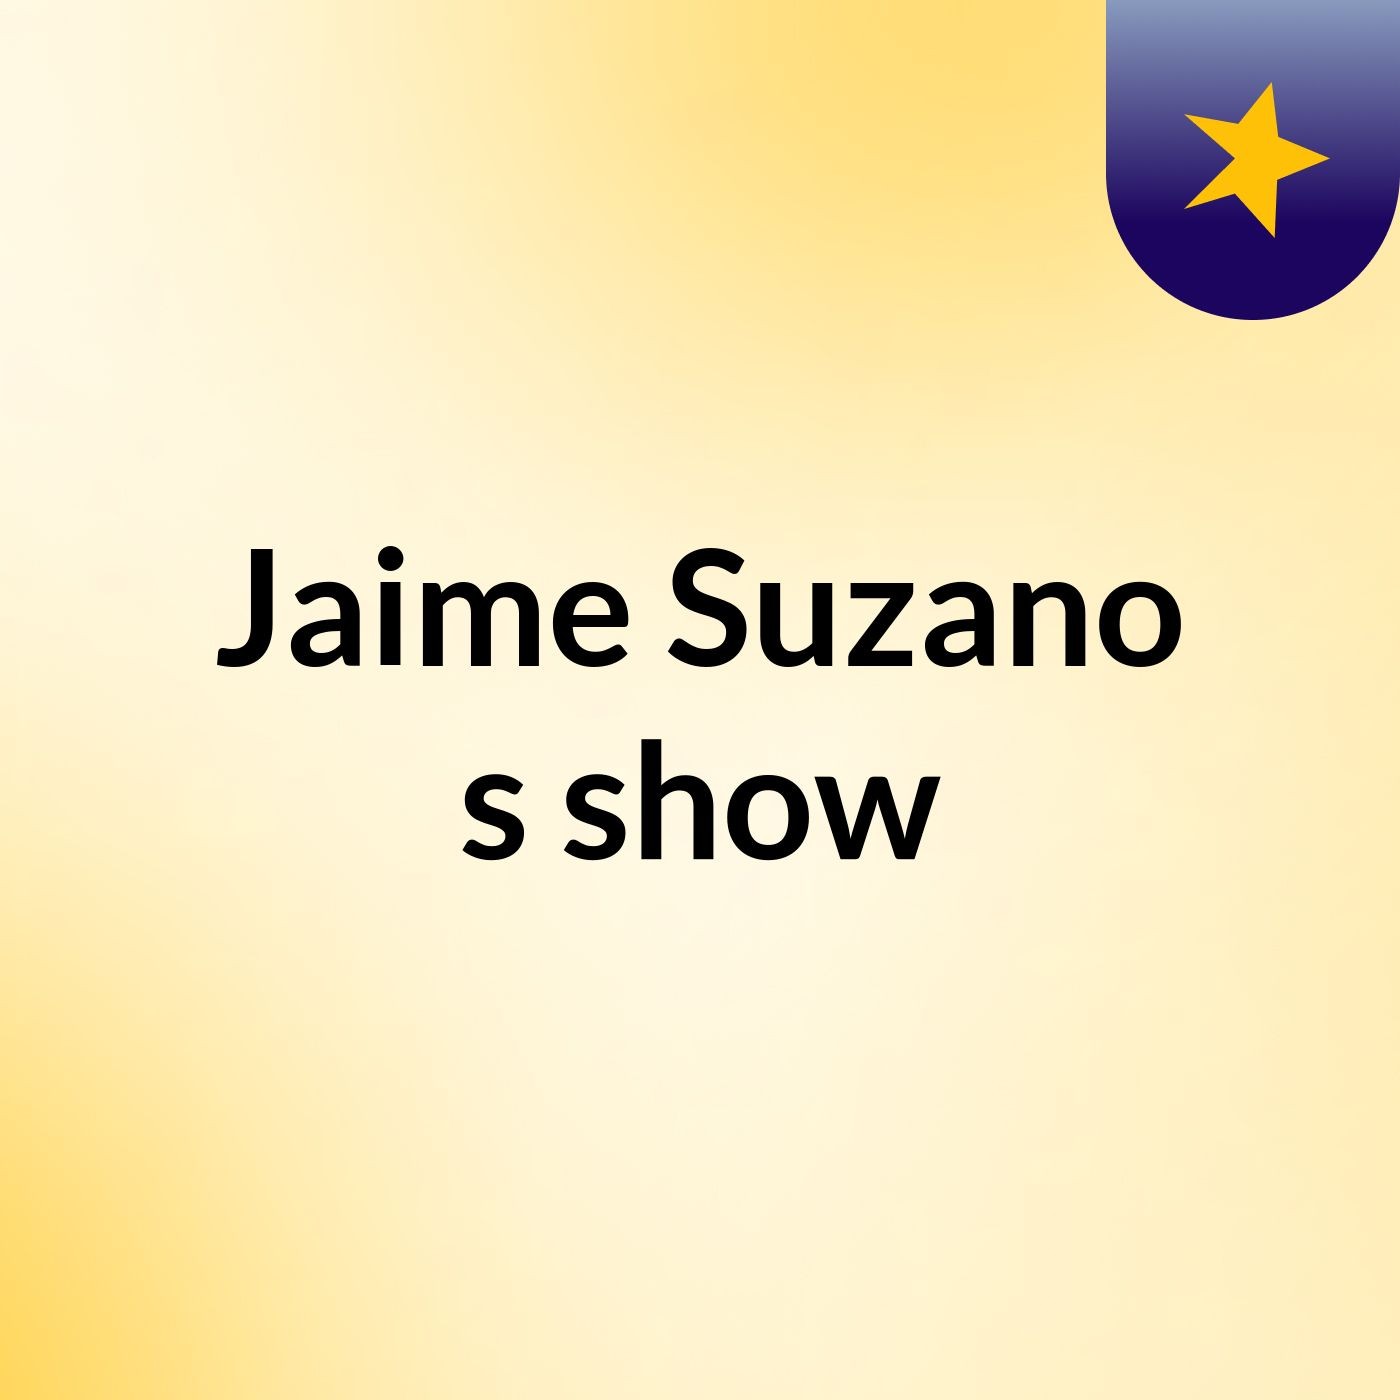 Jaime Suzano's show